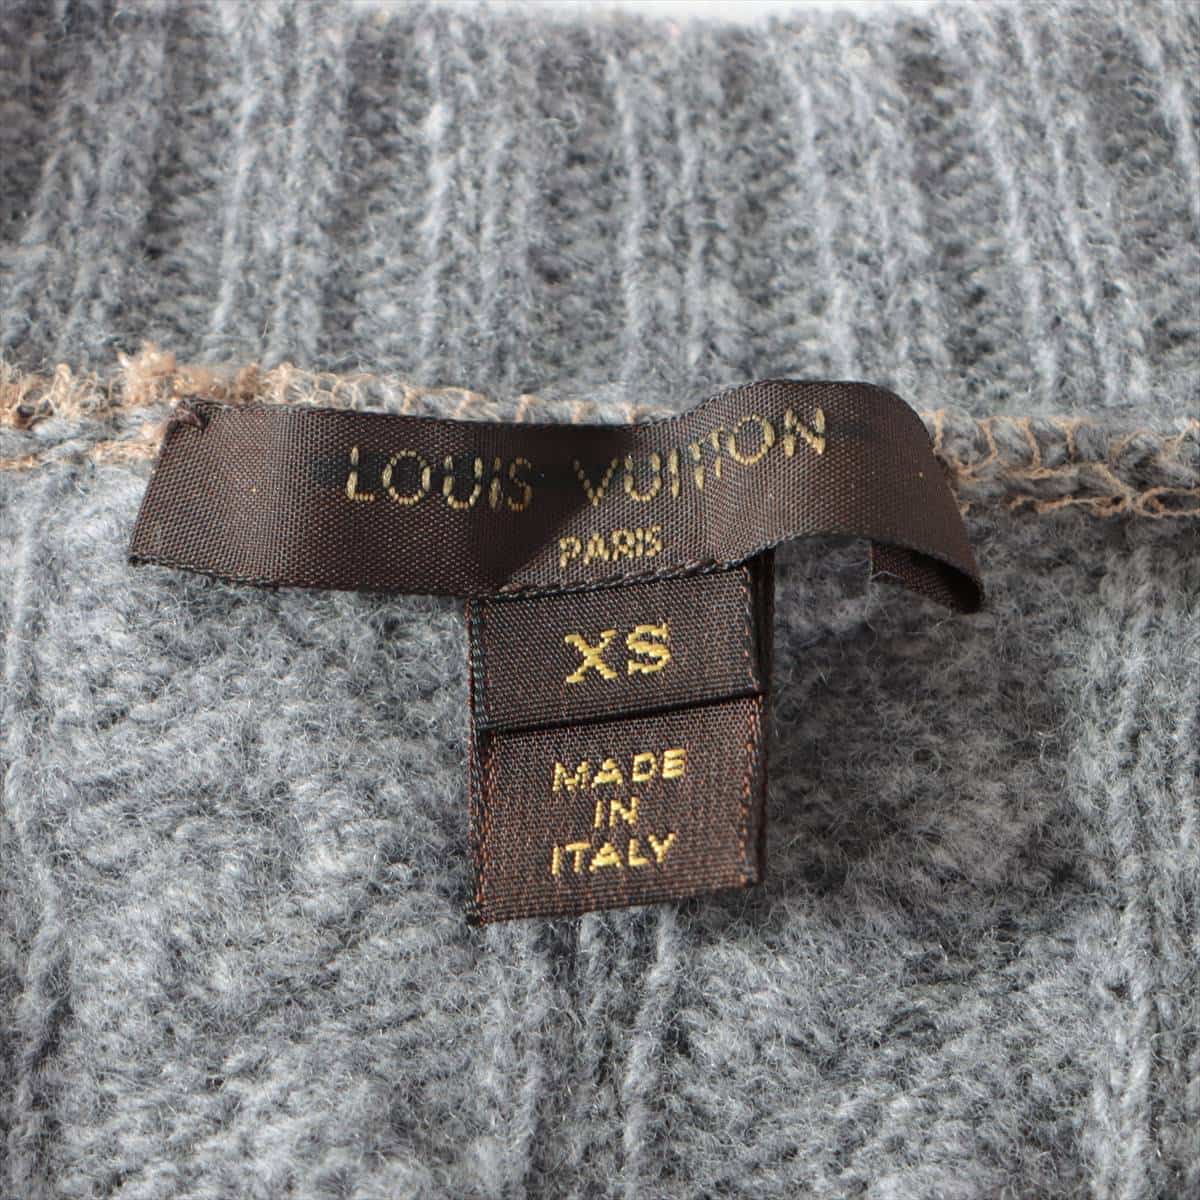 Louis Vuitton RW102 wool x rayon Knit dress XS Ladies' Grey